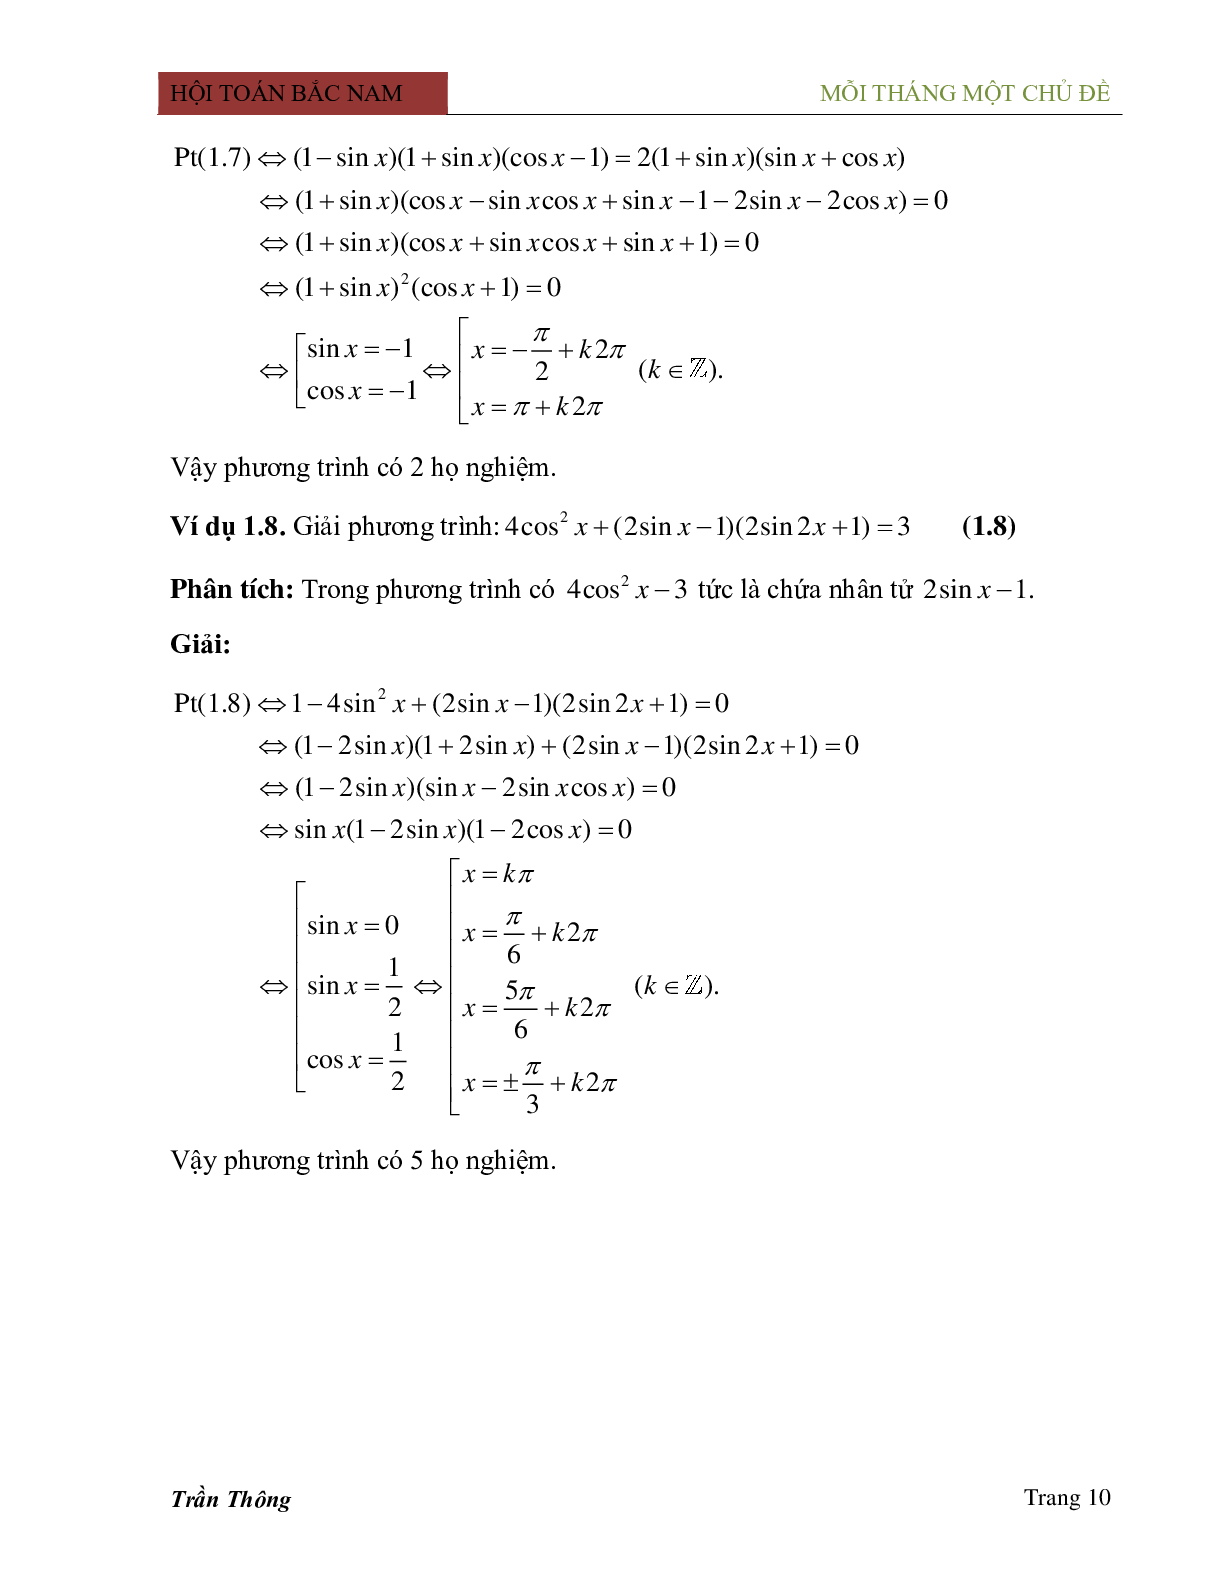 Phương pháp phân tích thành nhân tử trong việc giải phương trình lượng giác (trang 10)